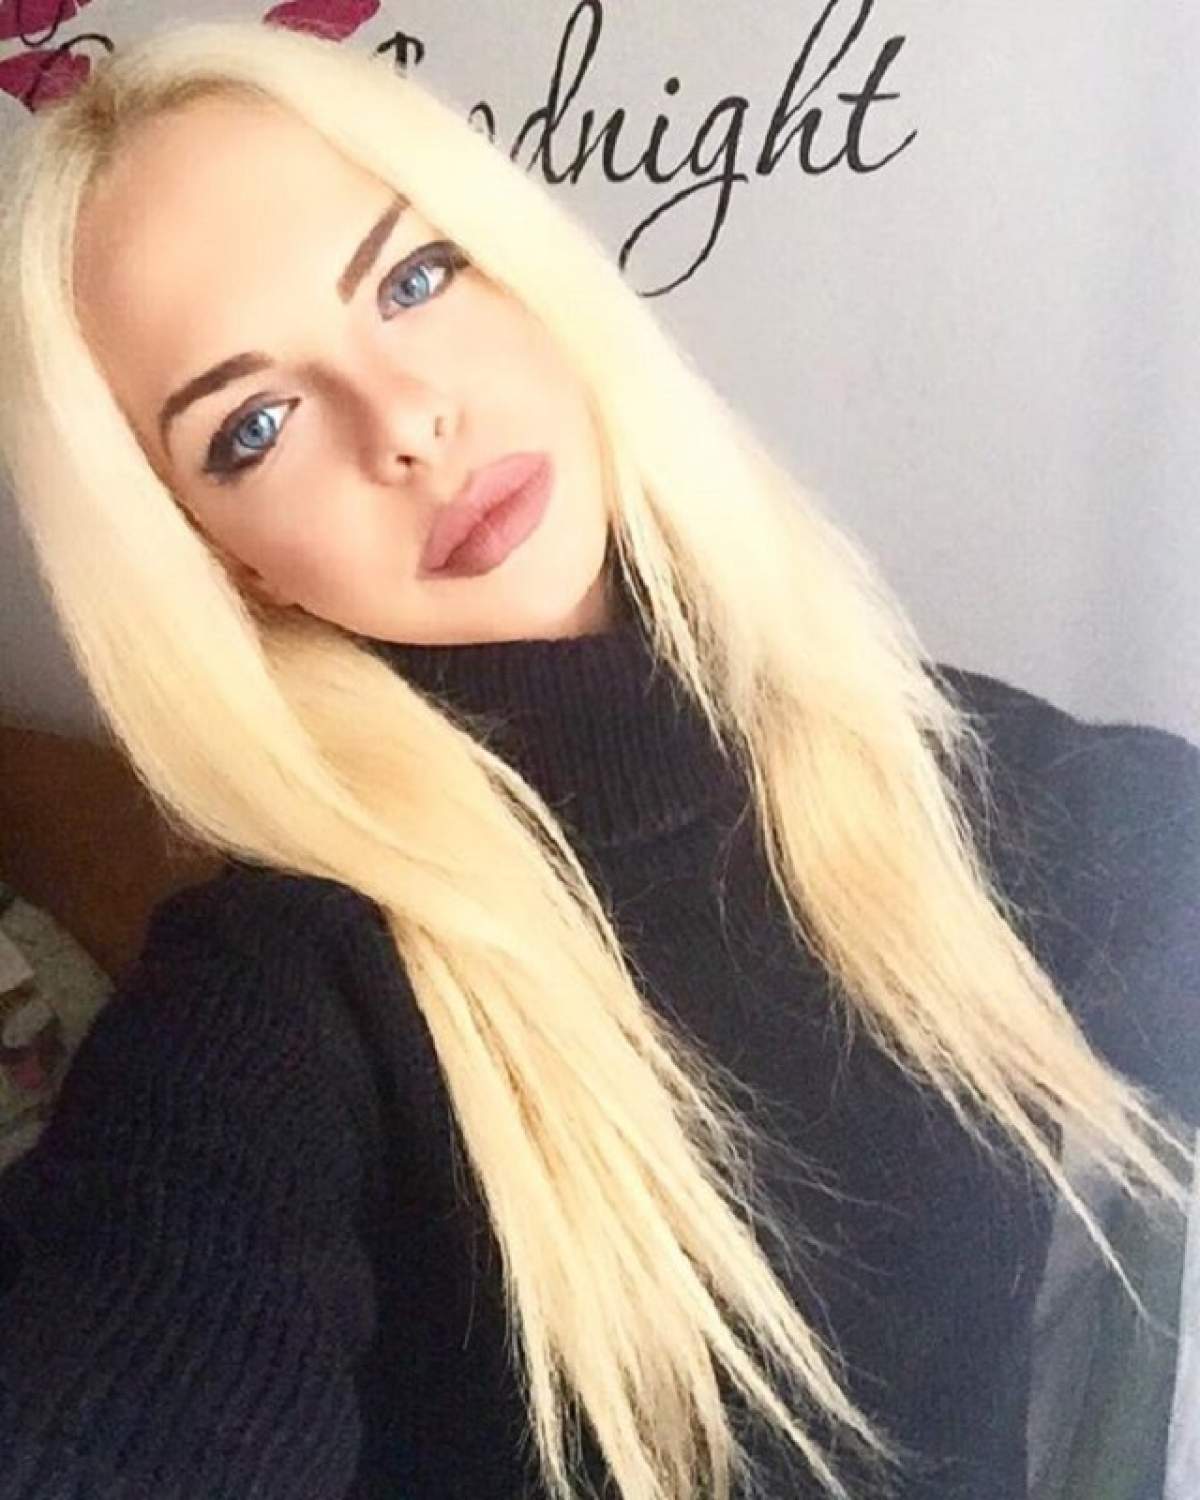 Barbie de România, făcută praf de internauți: „Dacă ai avea creier cât ai Botox în buze, ai fi Einstein de România”